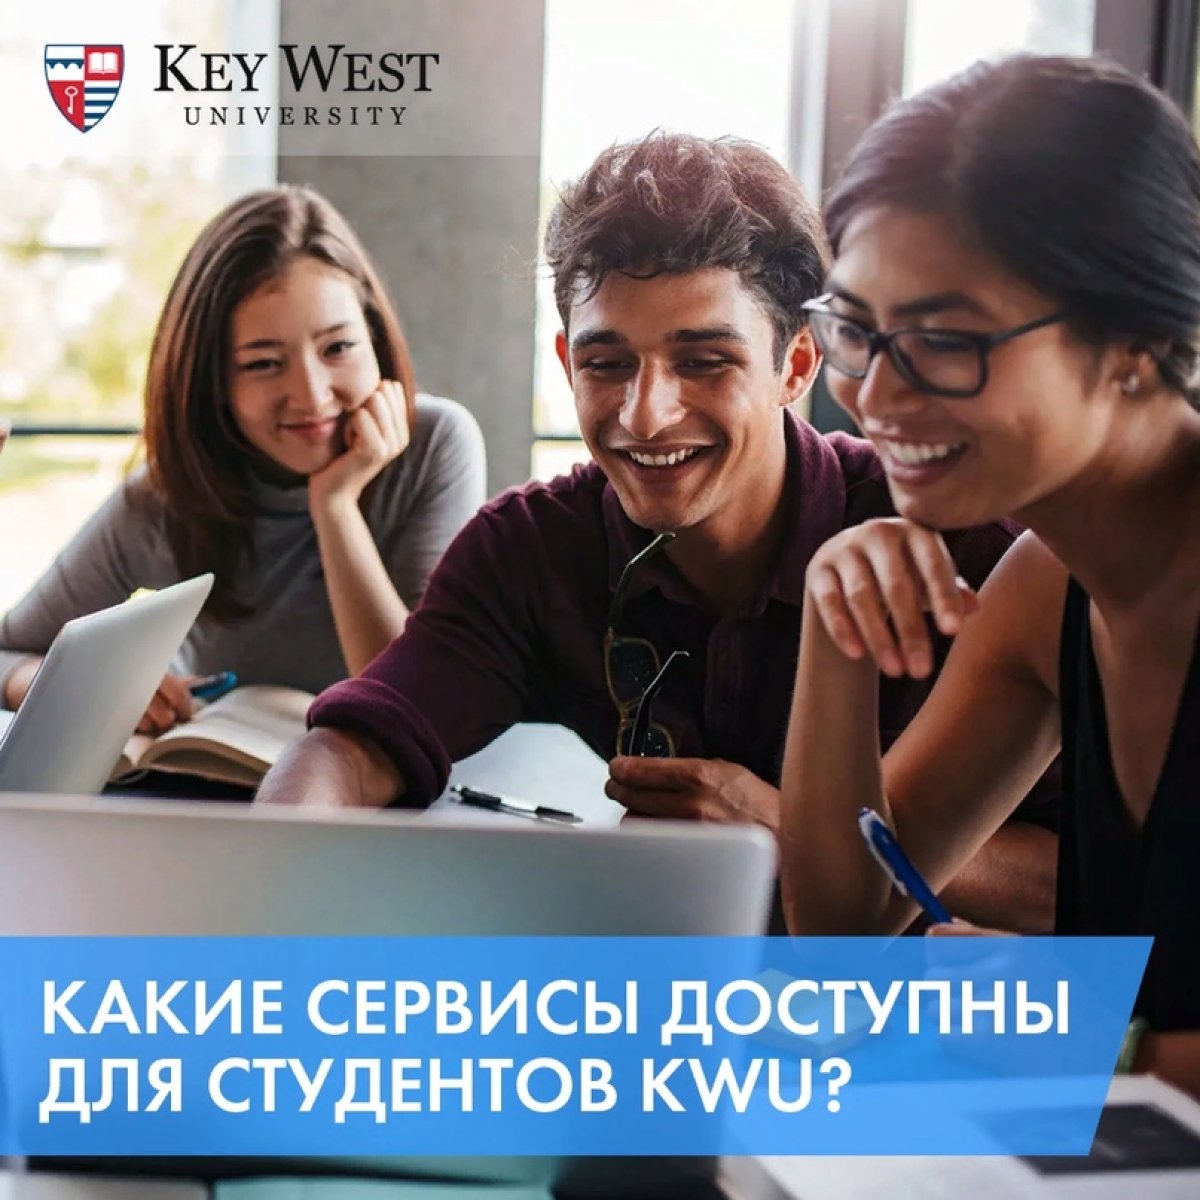 Что отличает Key West University от других университетов? Какие сервисы доступны для студентов и какие преимущества вы получаете при поступлении: